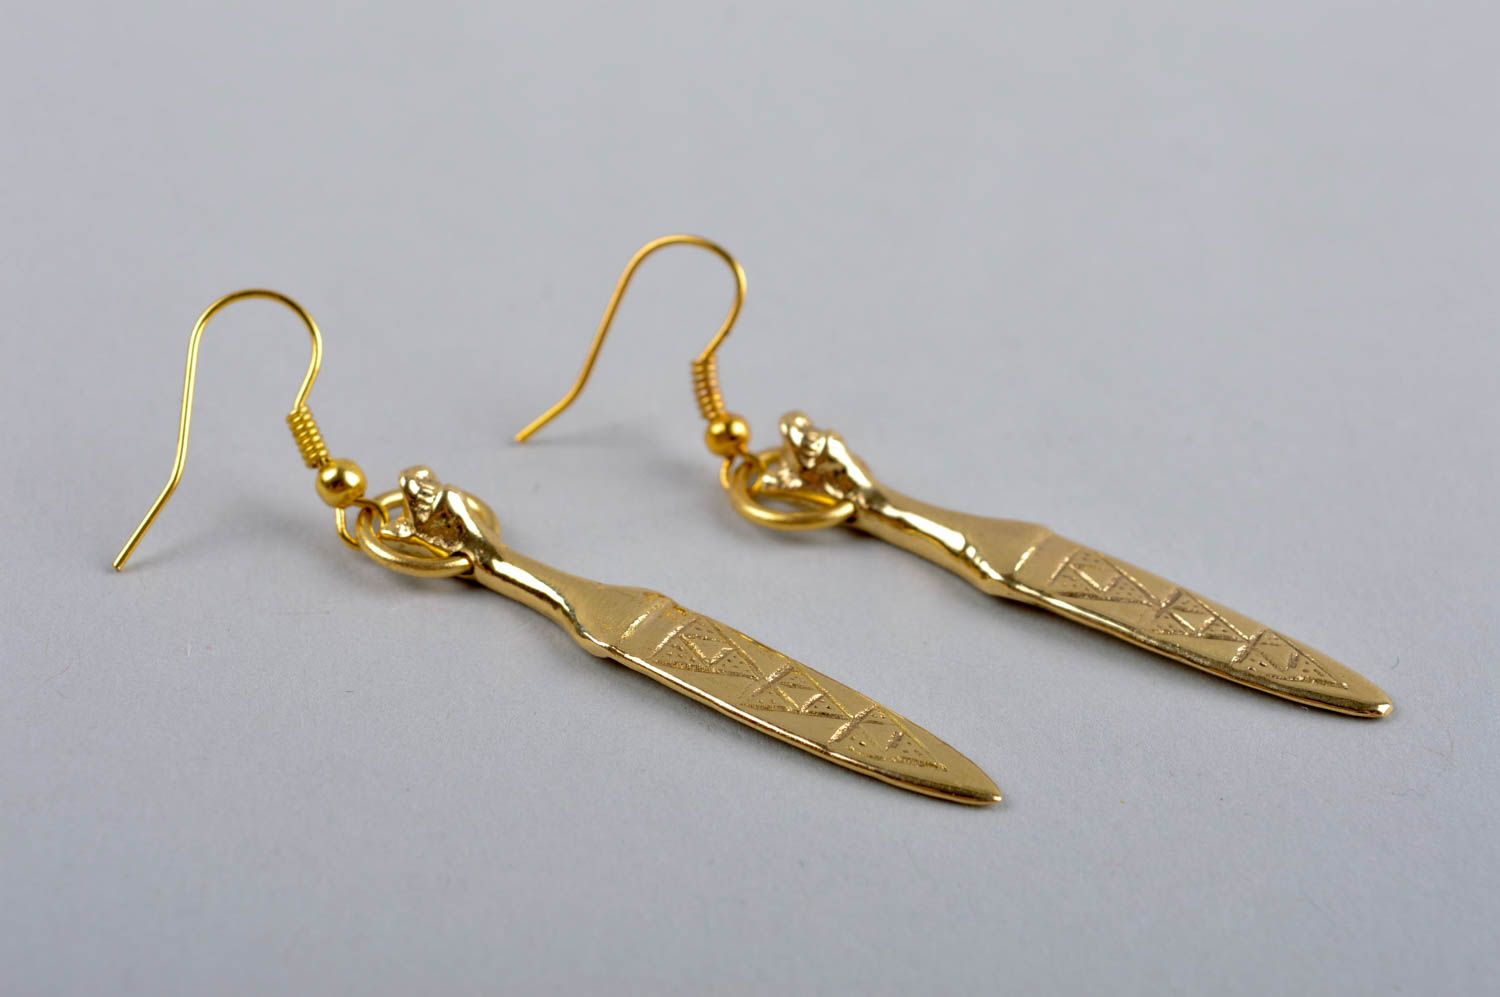 Handmade unusual earrings stylish designer earrings brass metal jewelry photo 4